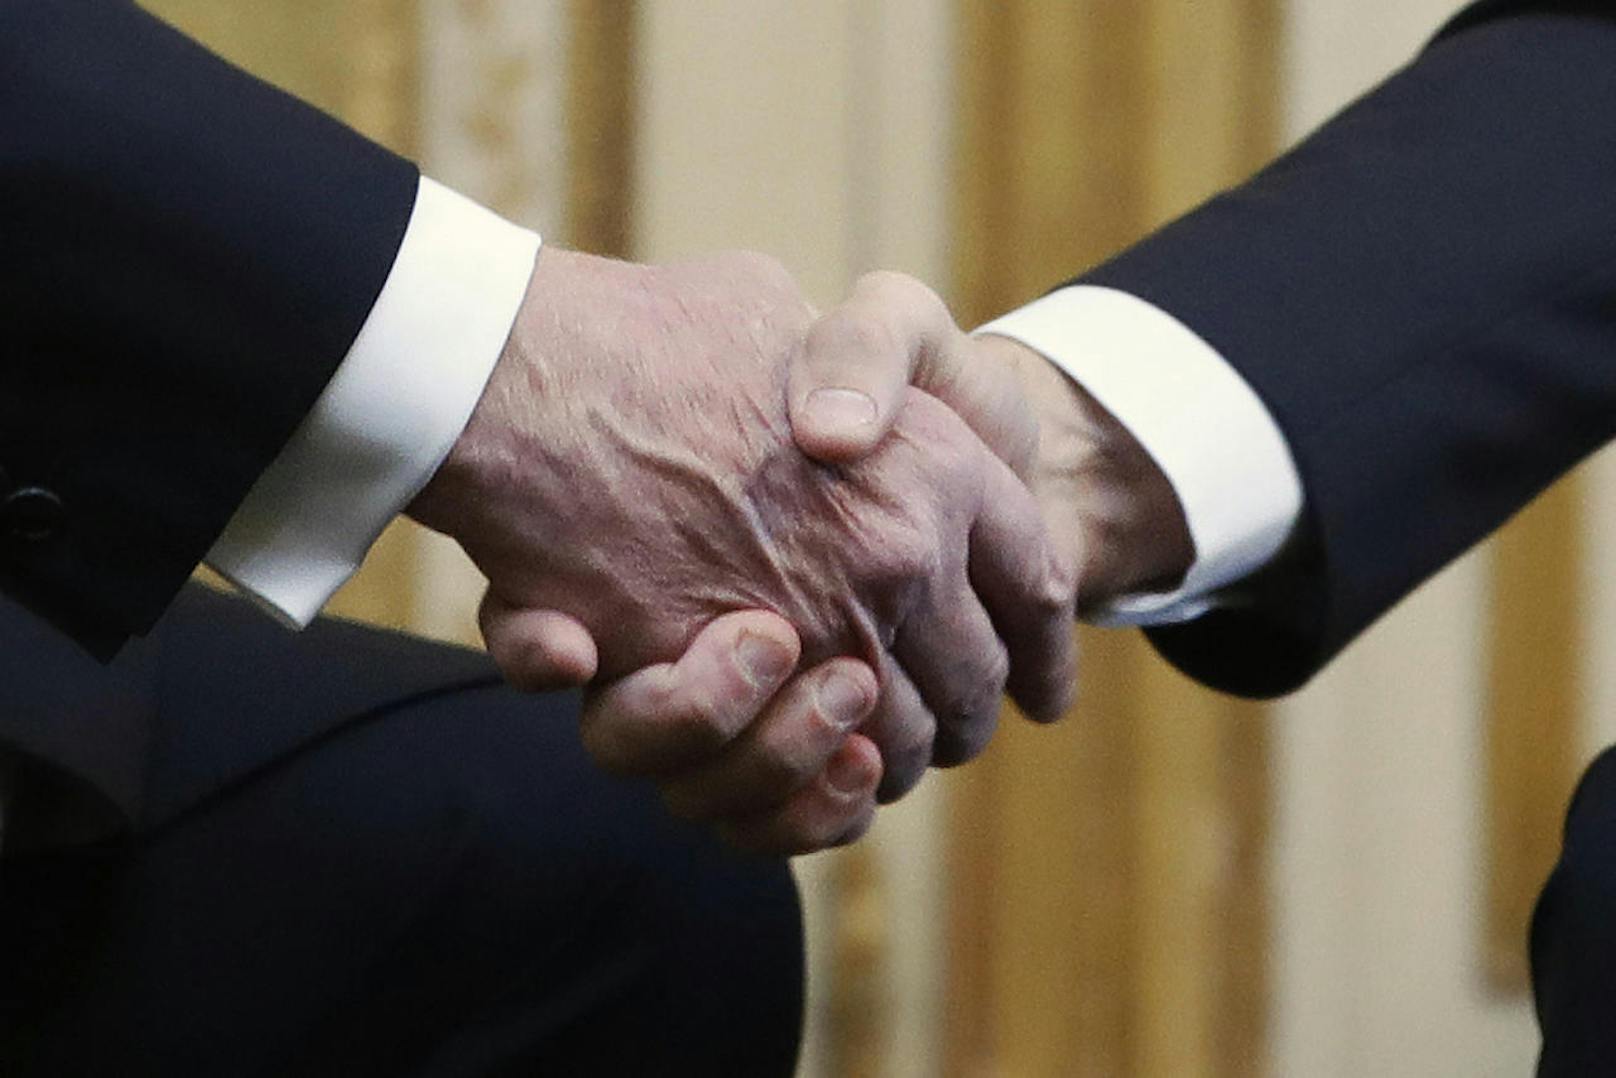 US-Präsident Donald Trump (l.) bei einem Treffen mit seinem französischen Amtskollegen Emmanuel Macron. Die beiden Präsidenten liefern sich immer wieder bizarre Handschlag-Duelle. So auch beim Treffen in Paris am 10. November. Macron "gewann" das Duell und zerquetschte Trumps Hand regelrecht.